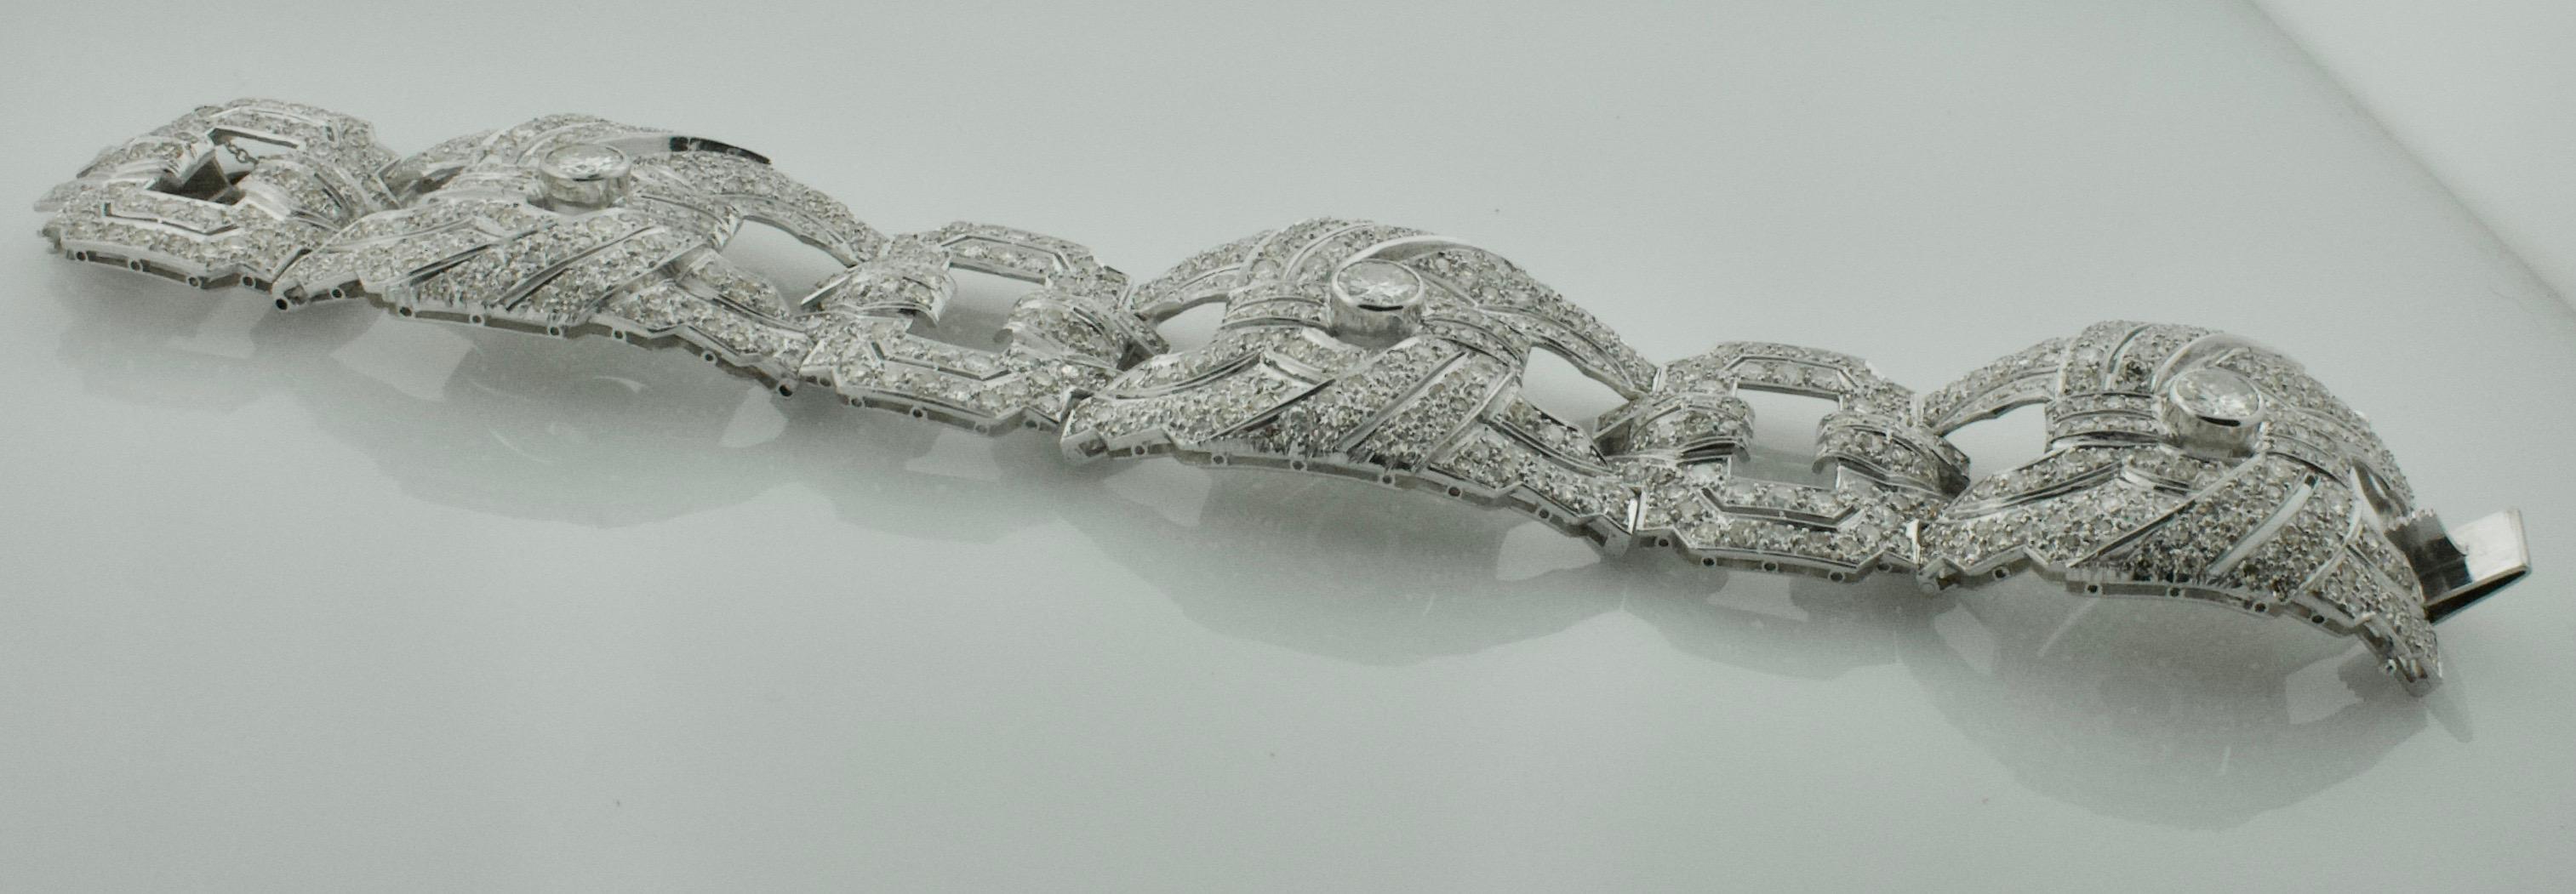 Art Deco Important Diamond Bracelet in Platinum, circa 1920s 25.45 Carat